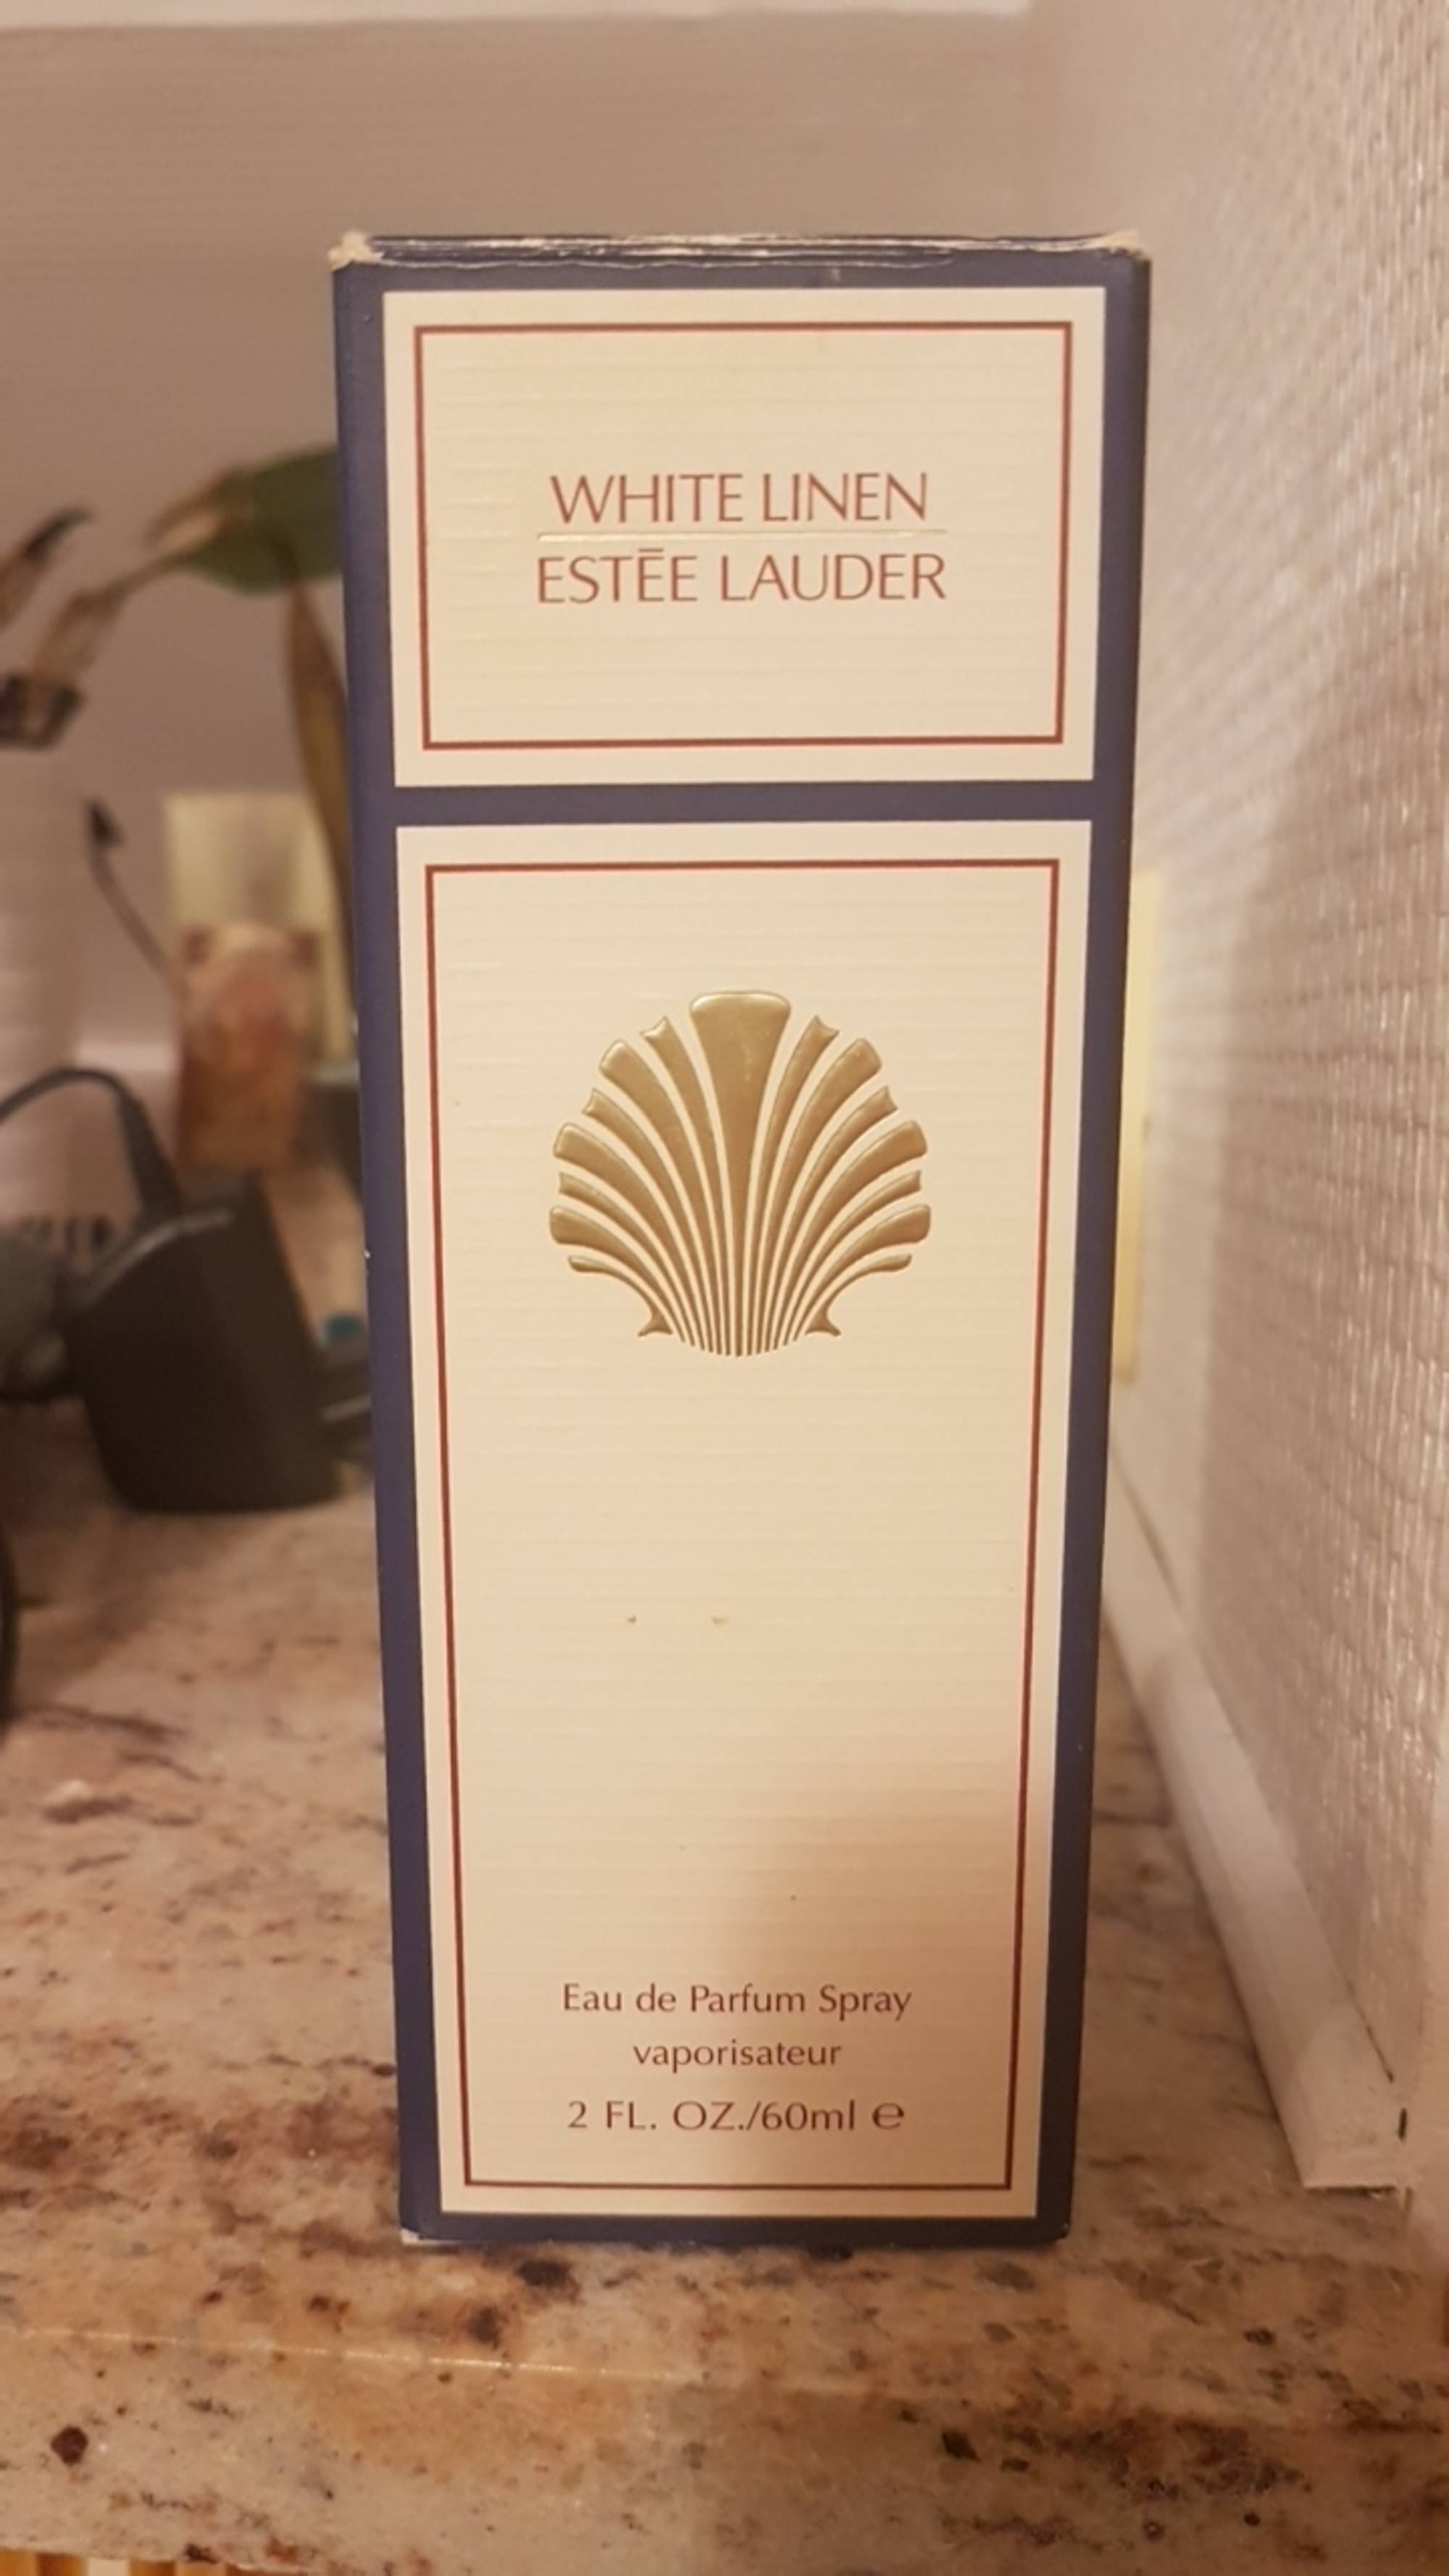 ESTEE LAUDER - White linen - Eau de parfum